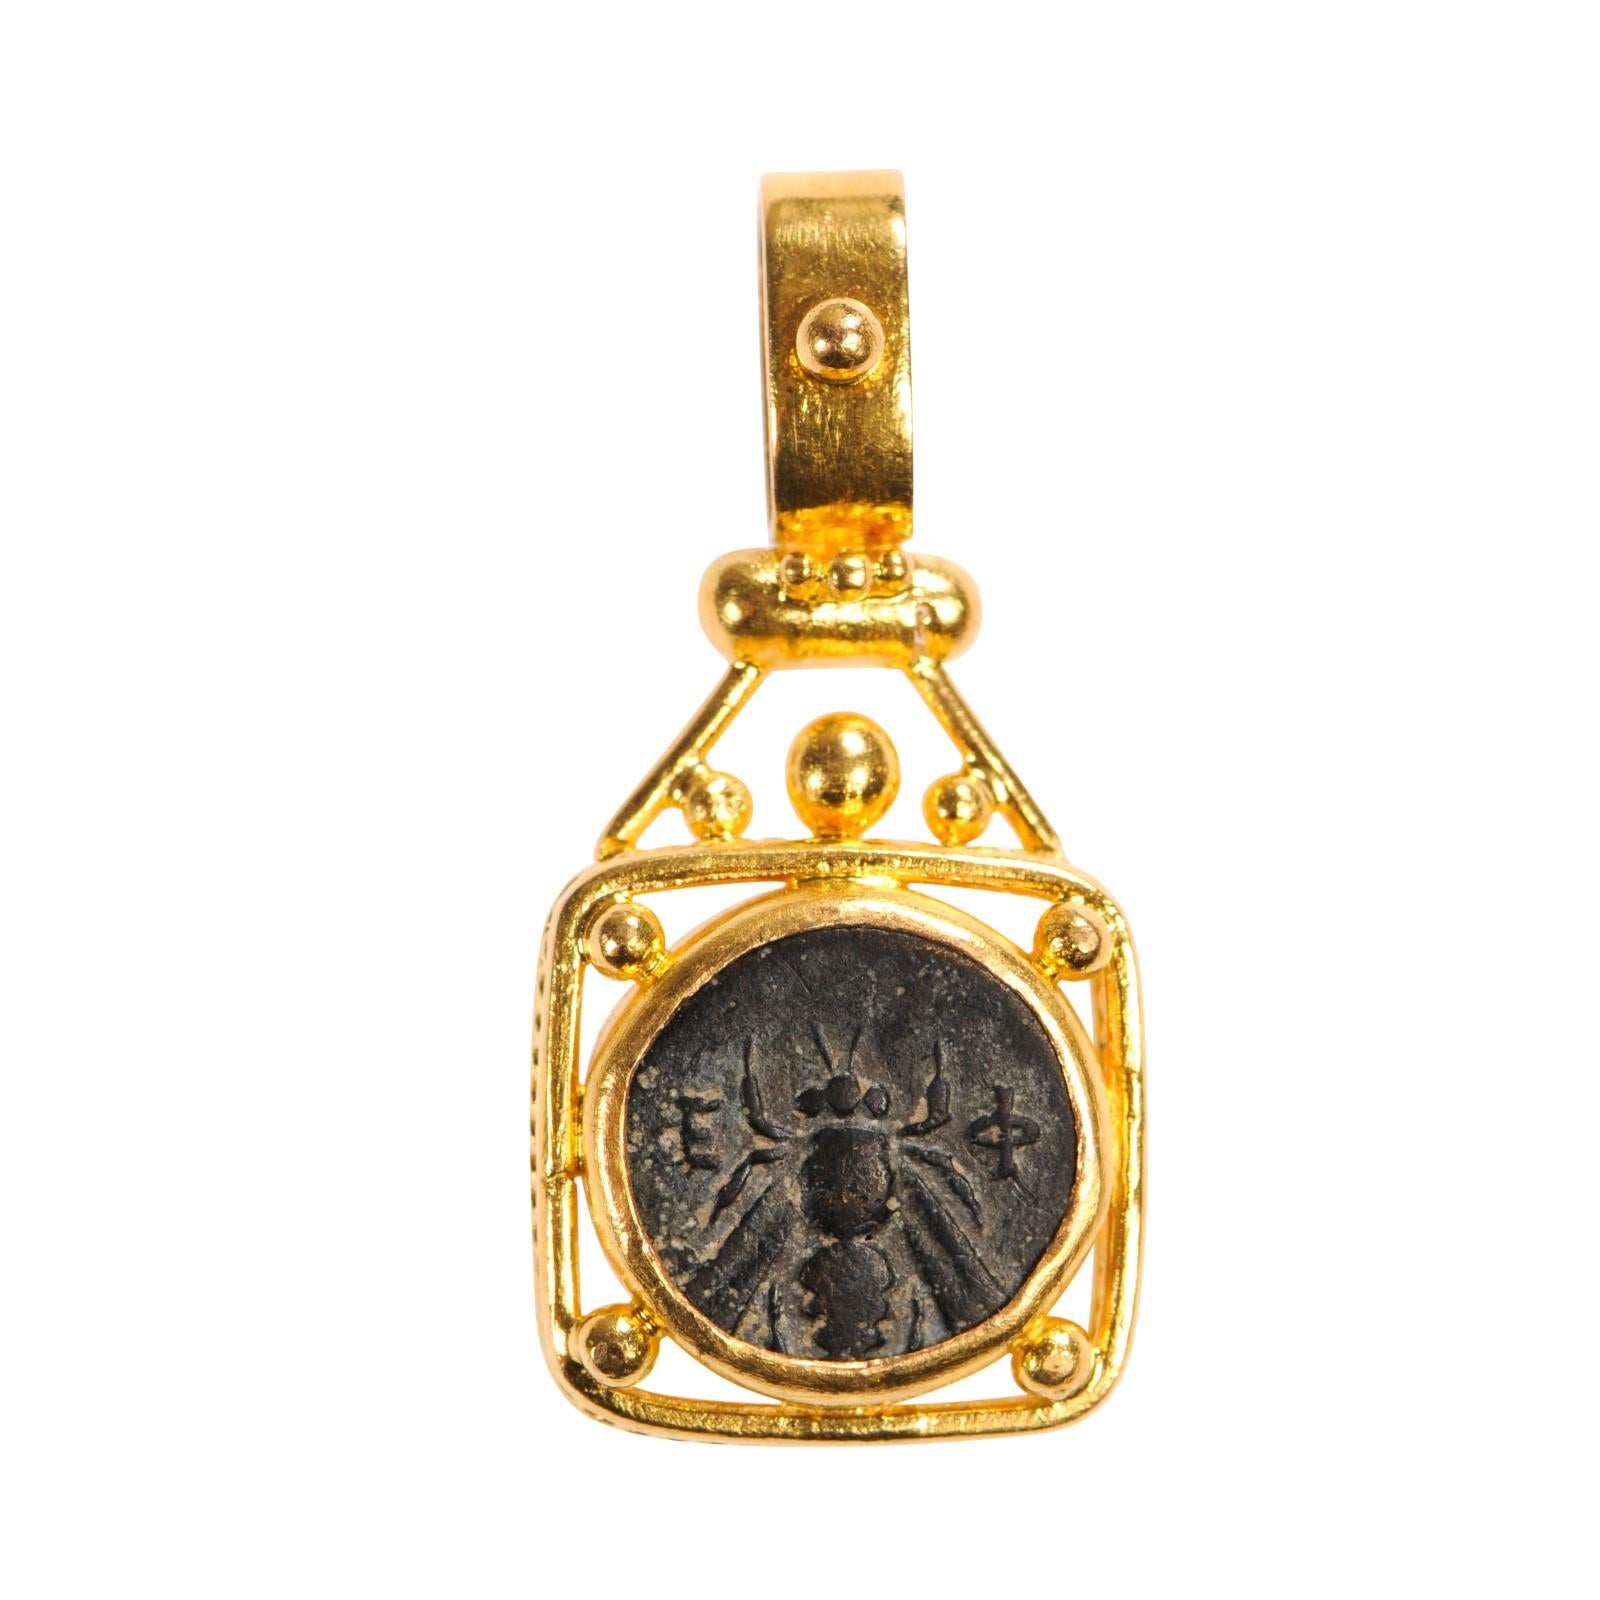 Eine authentische griechische Bronzemünze, ca. 350 - 300 v. Chr., auf der Vorderseite eine Biene, auf der Rückseite ein kniender Hirsch, eingefasst in eine quadratische 22-karätige Goldlünette. Der Münzanhänger misst ungefähr 1 1/3